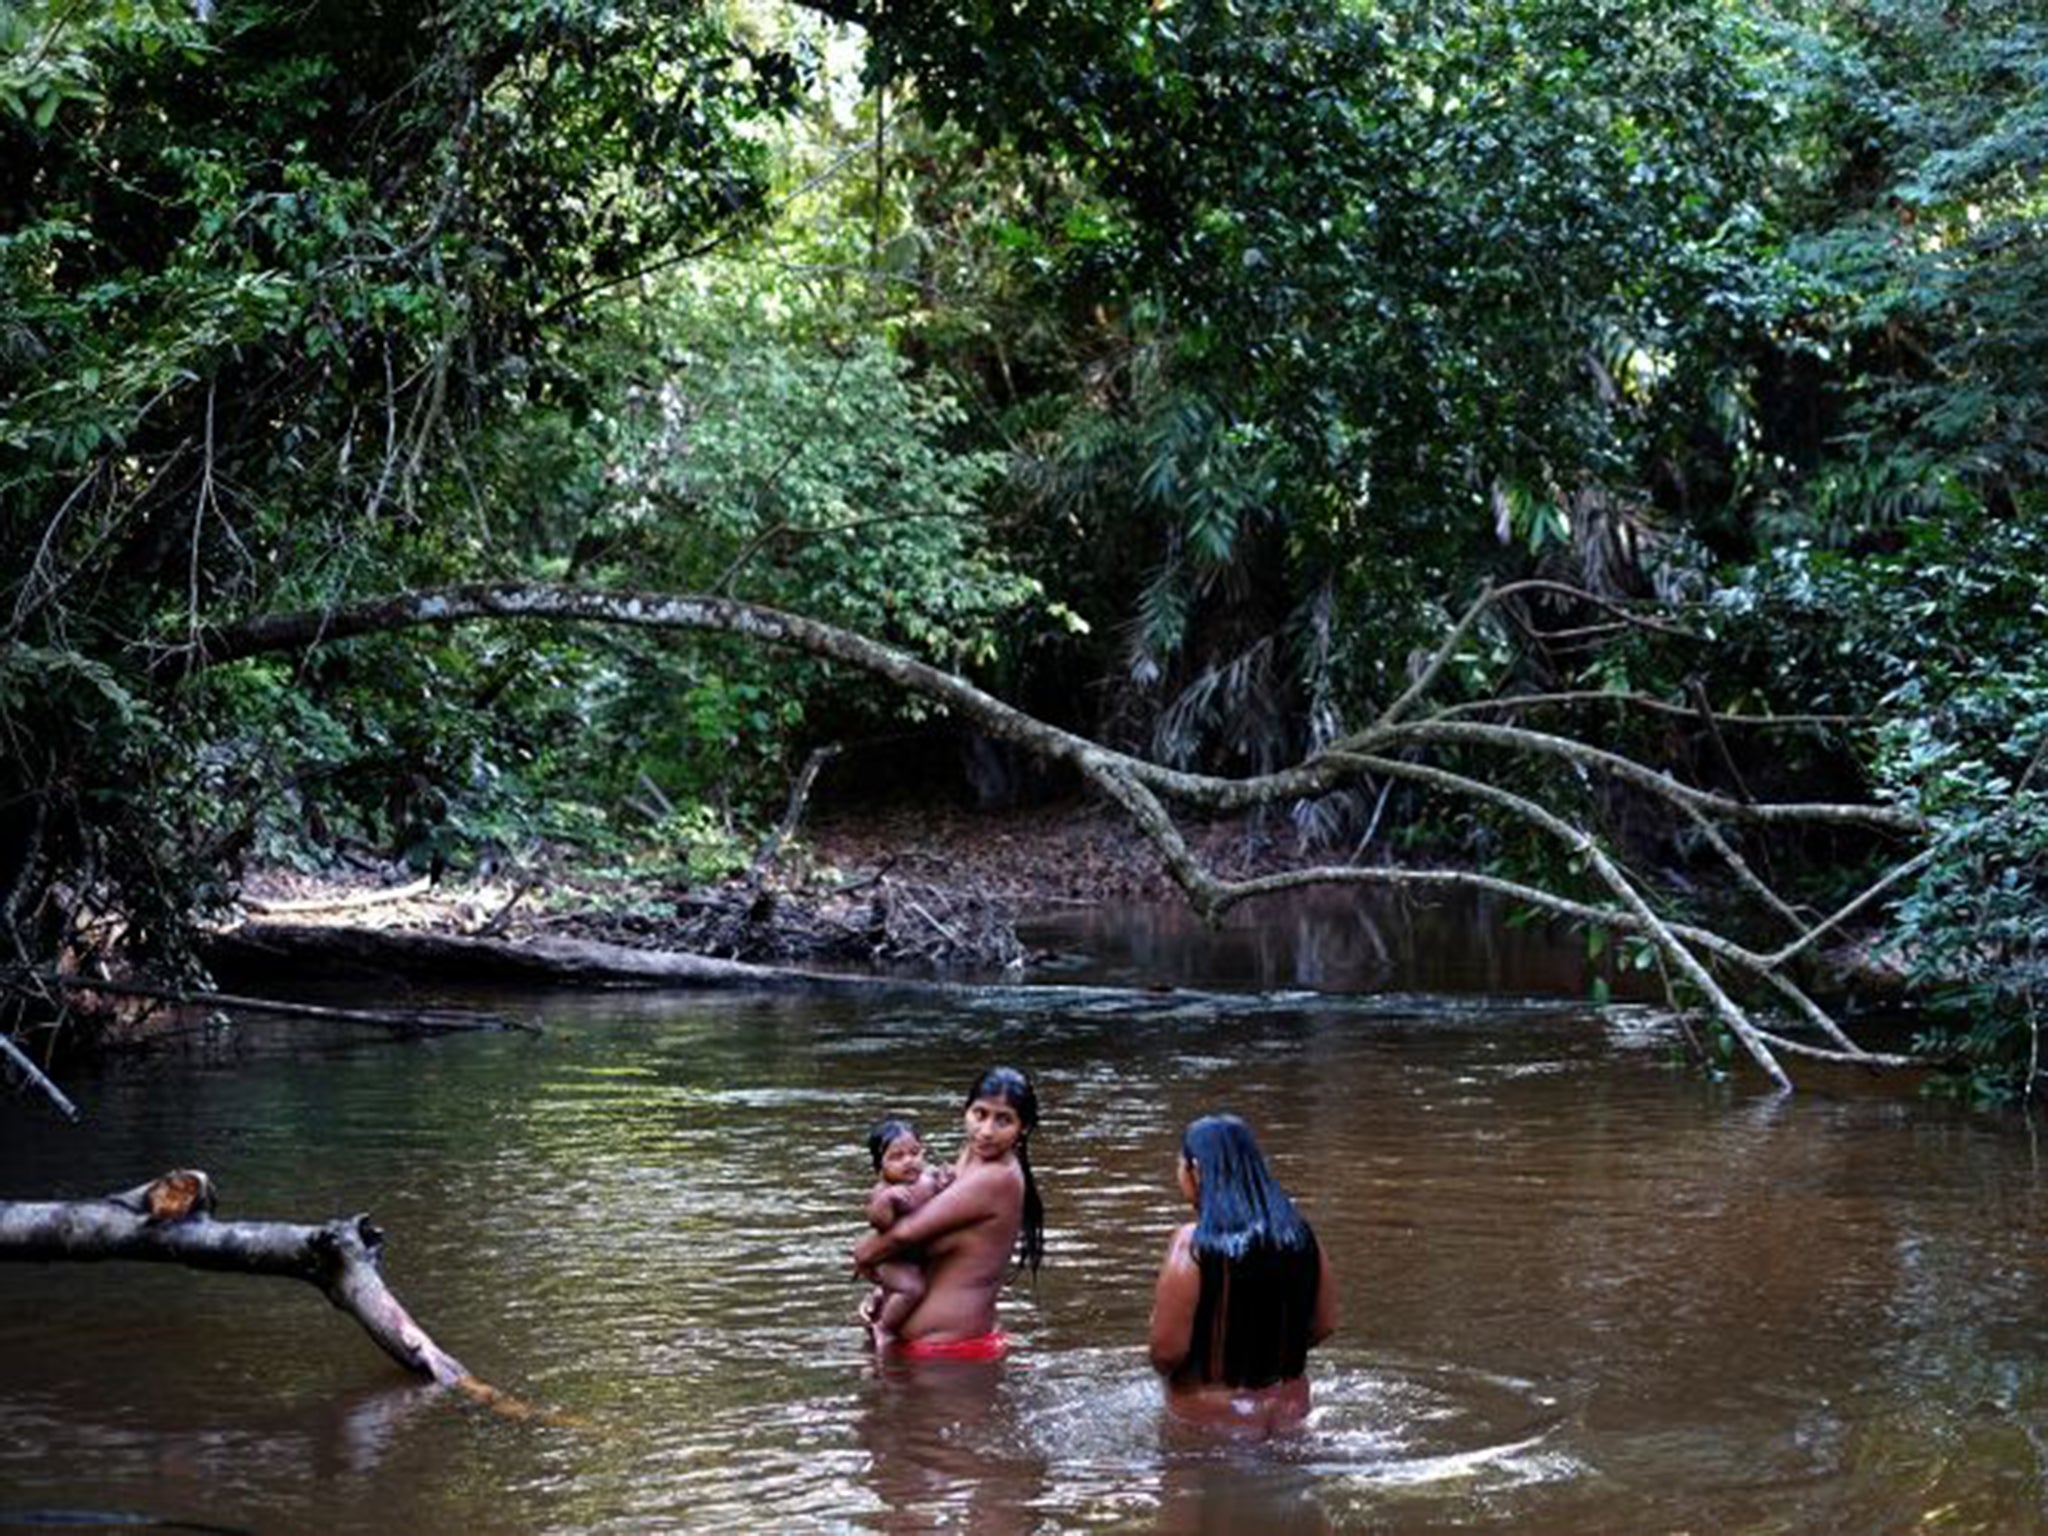 Amazon Tribes Women Bathing